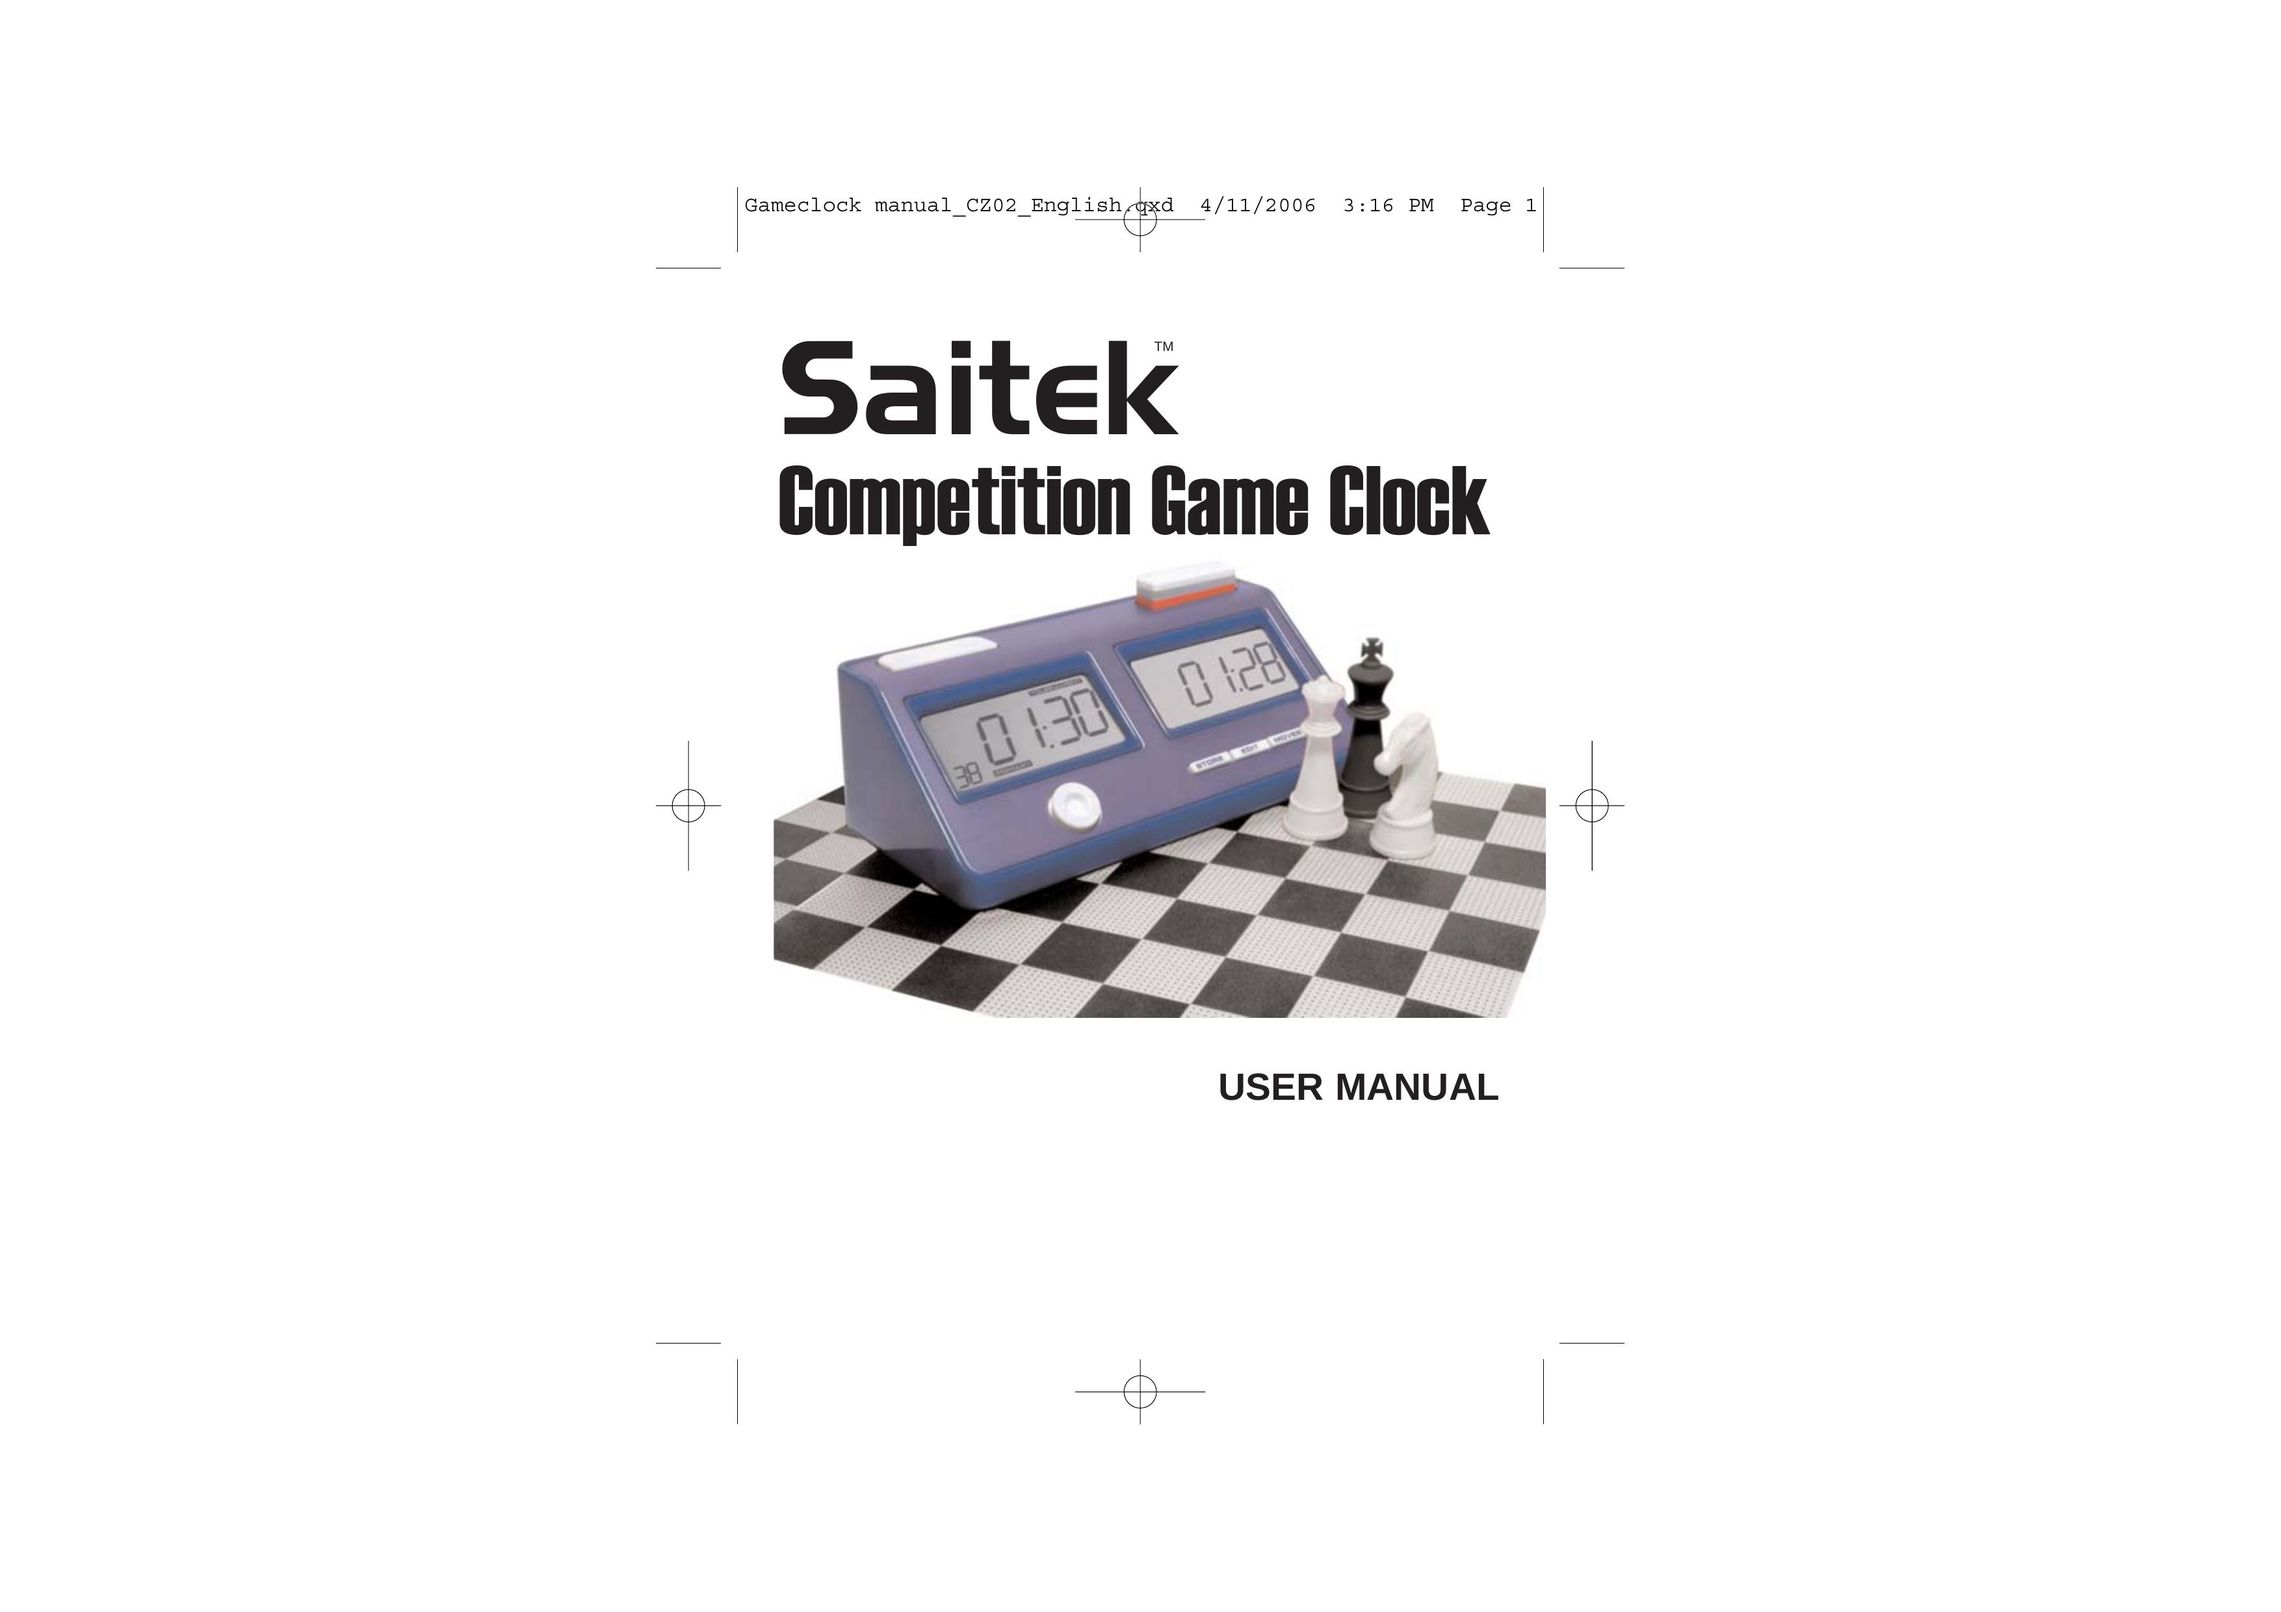 Saitek Game Clock Clock User Manual